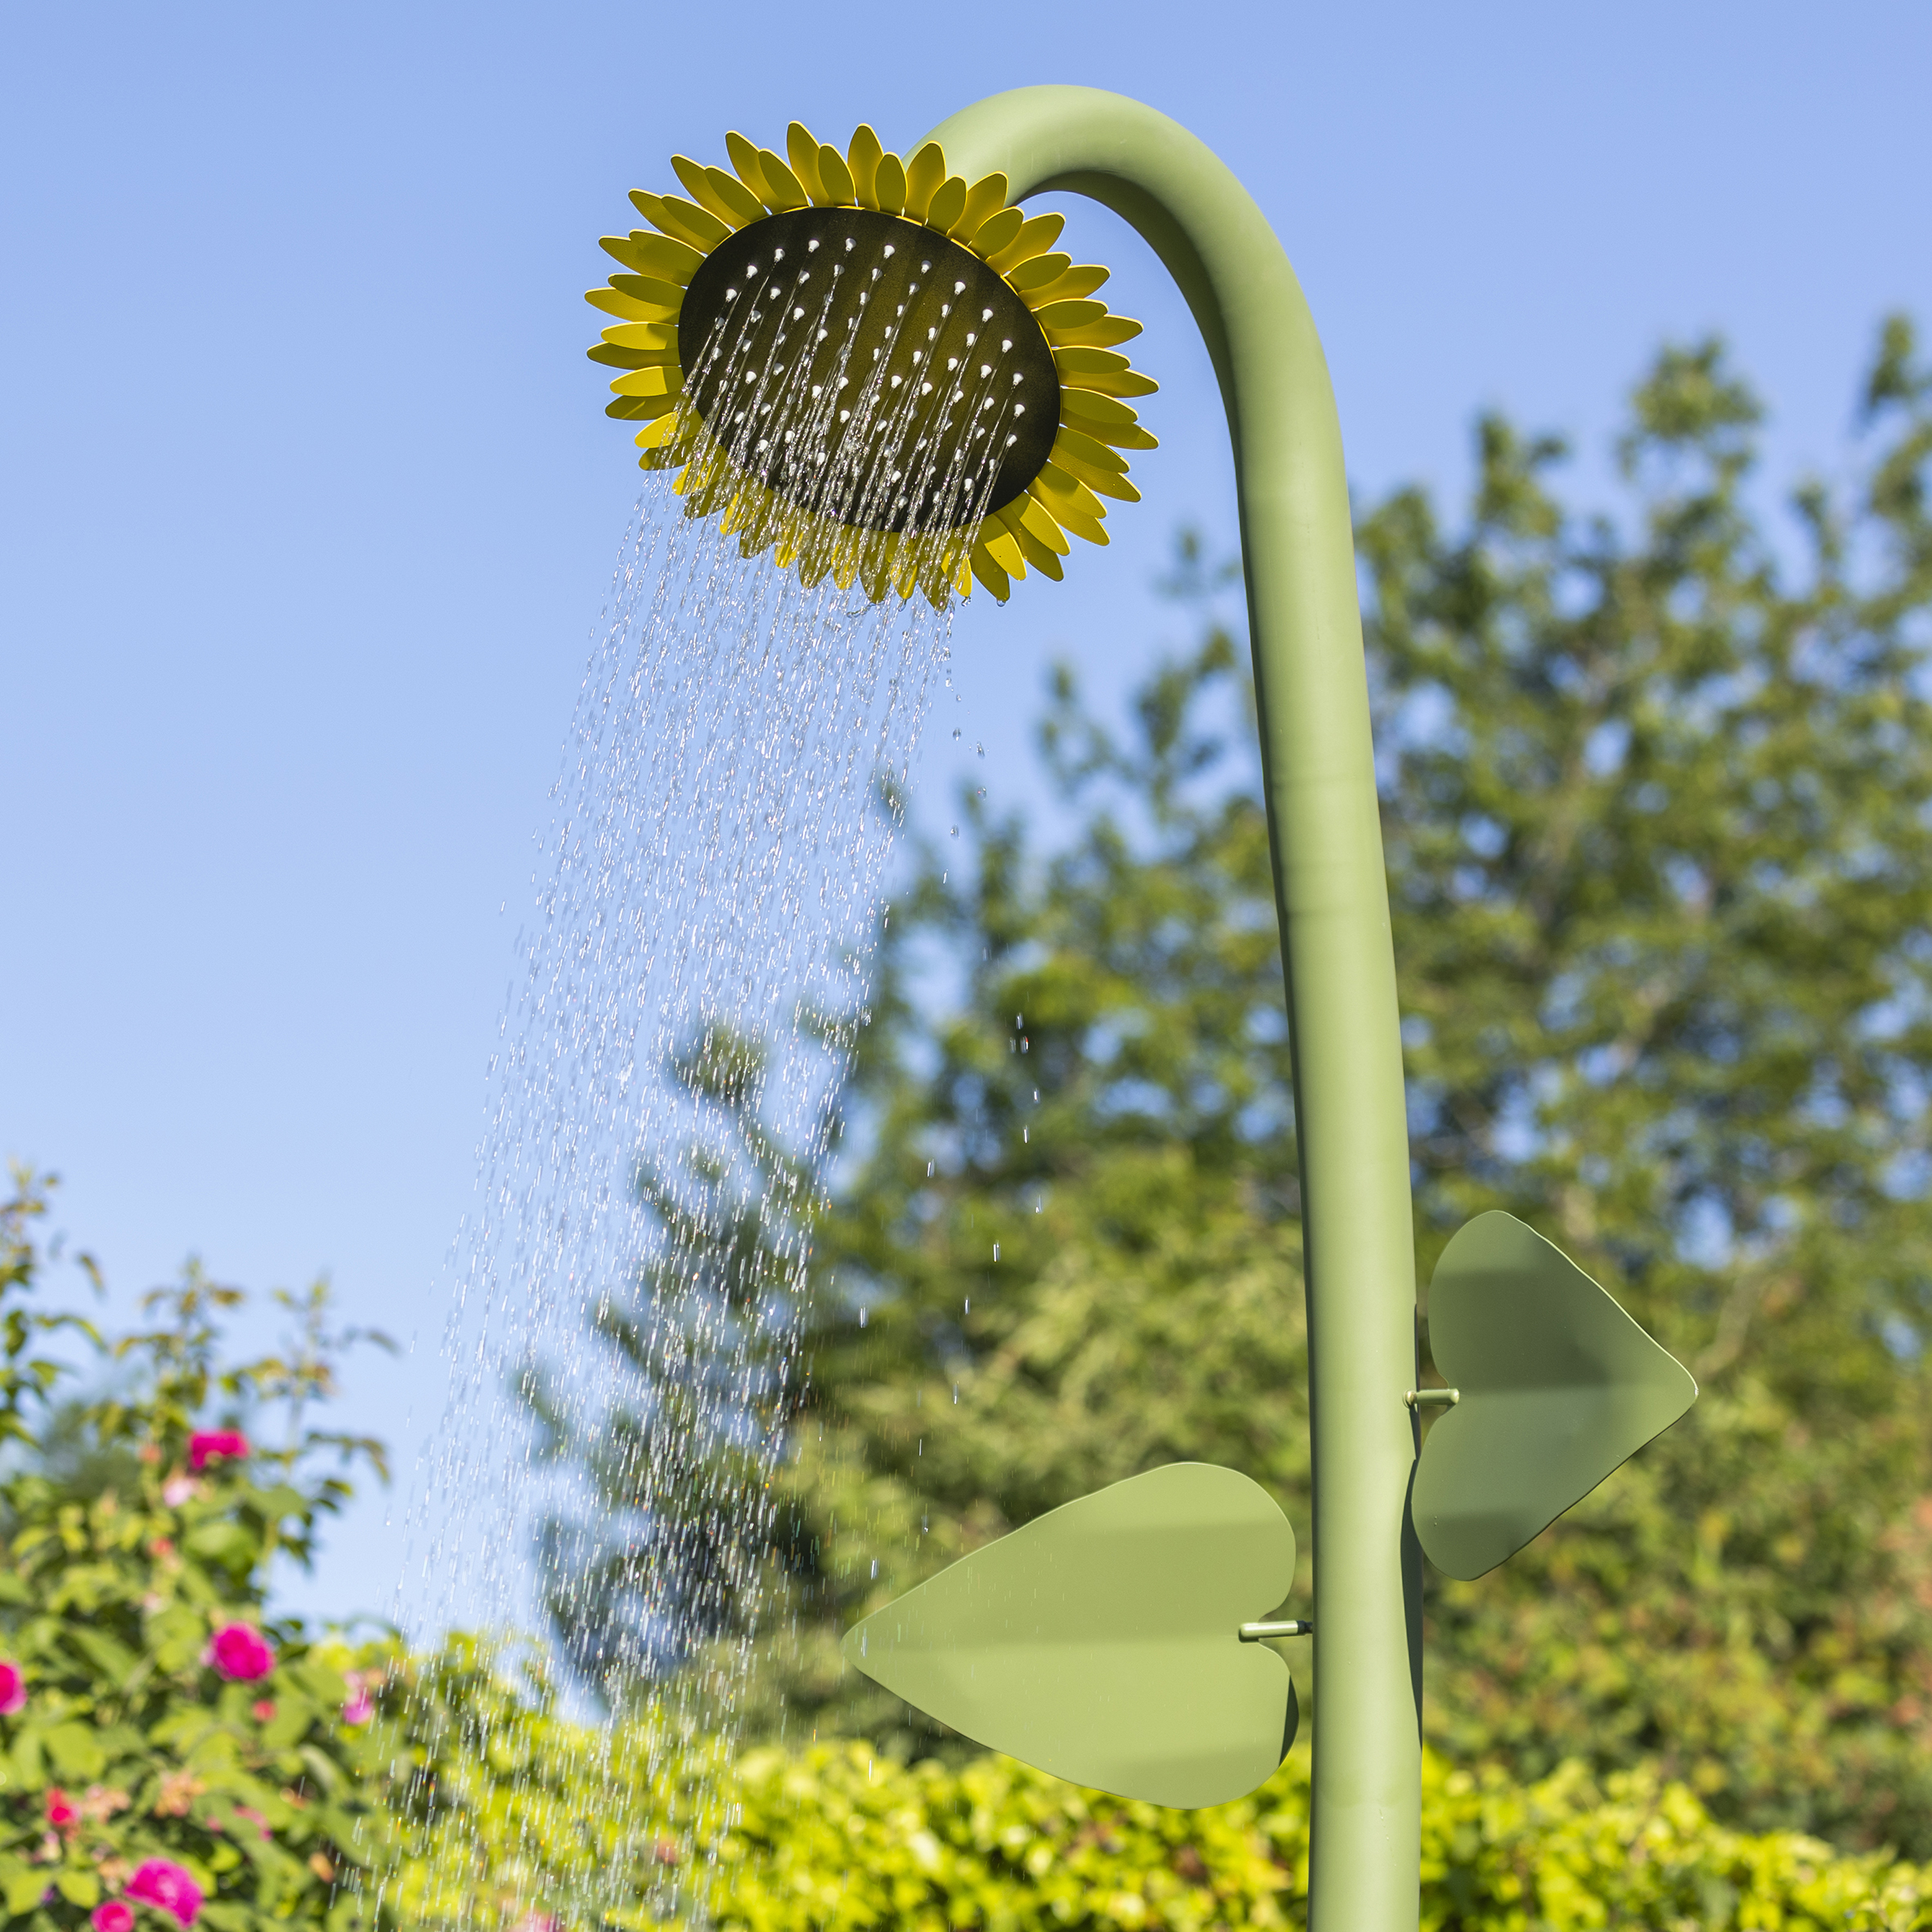 Gartendusche Sonnenblume mit Schlauchanschluss von Flowershower aus Edelstahl Detail Duschkopf Wasserstrahl